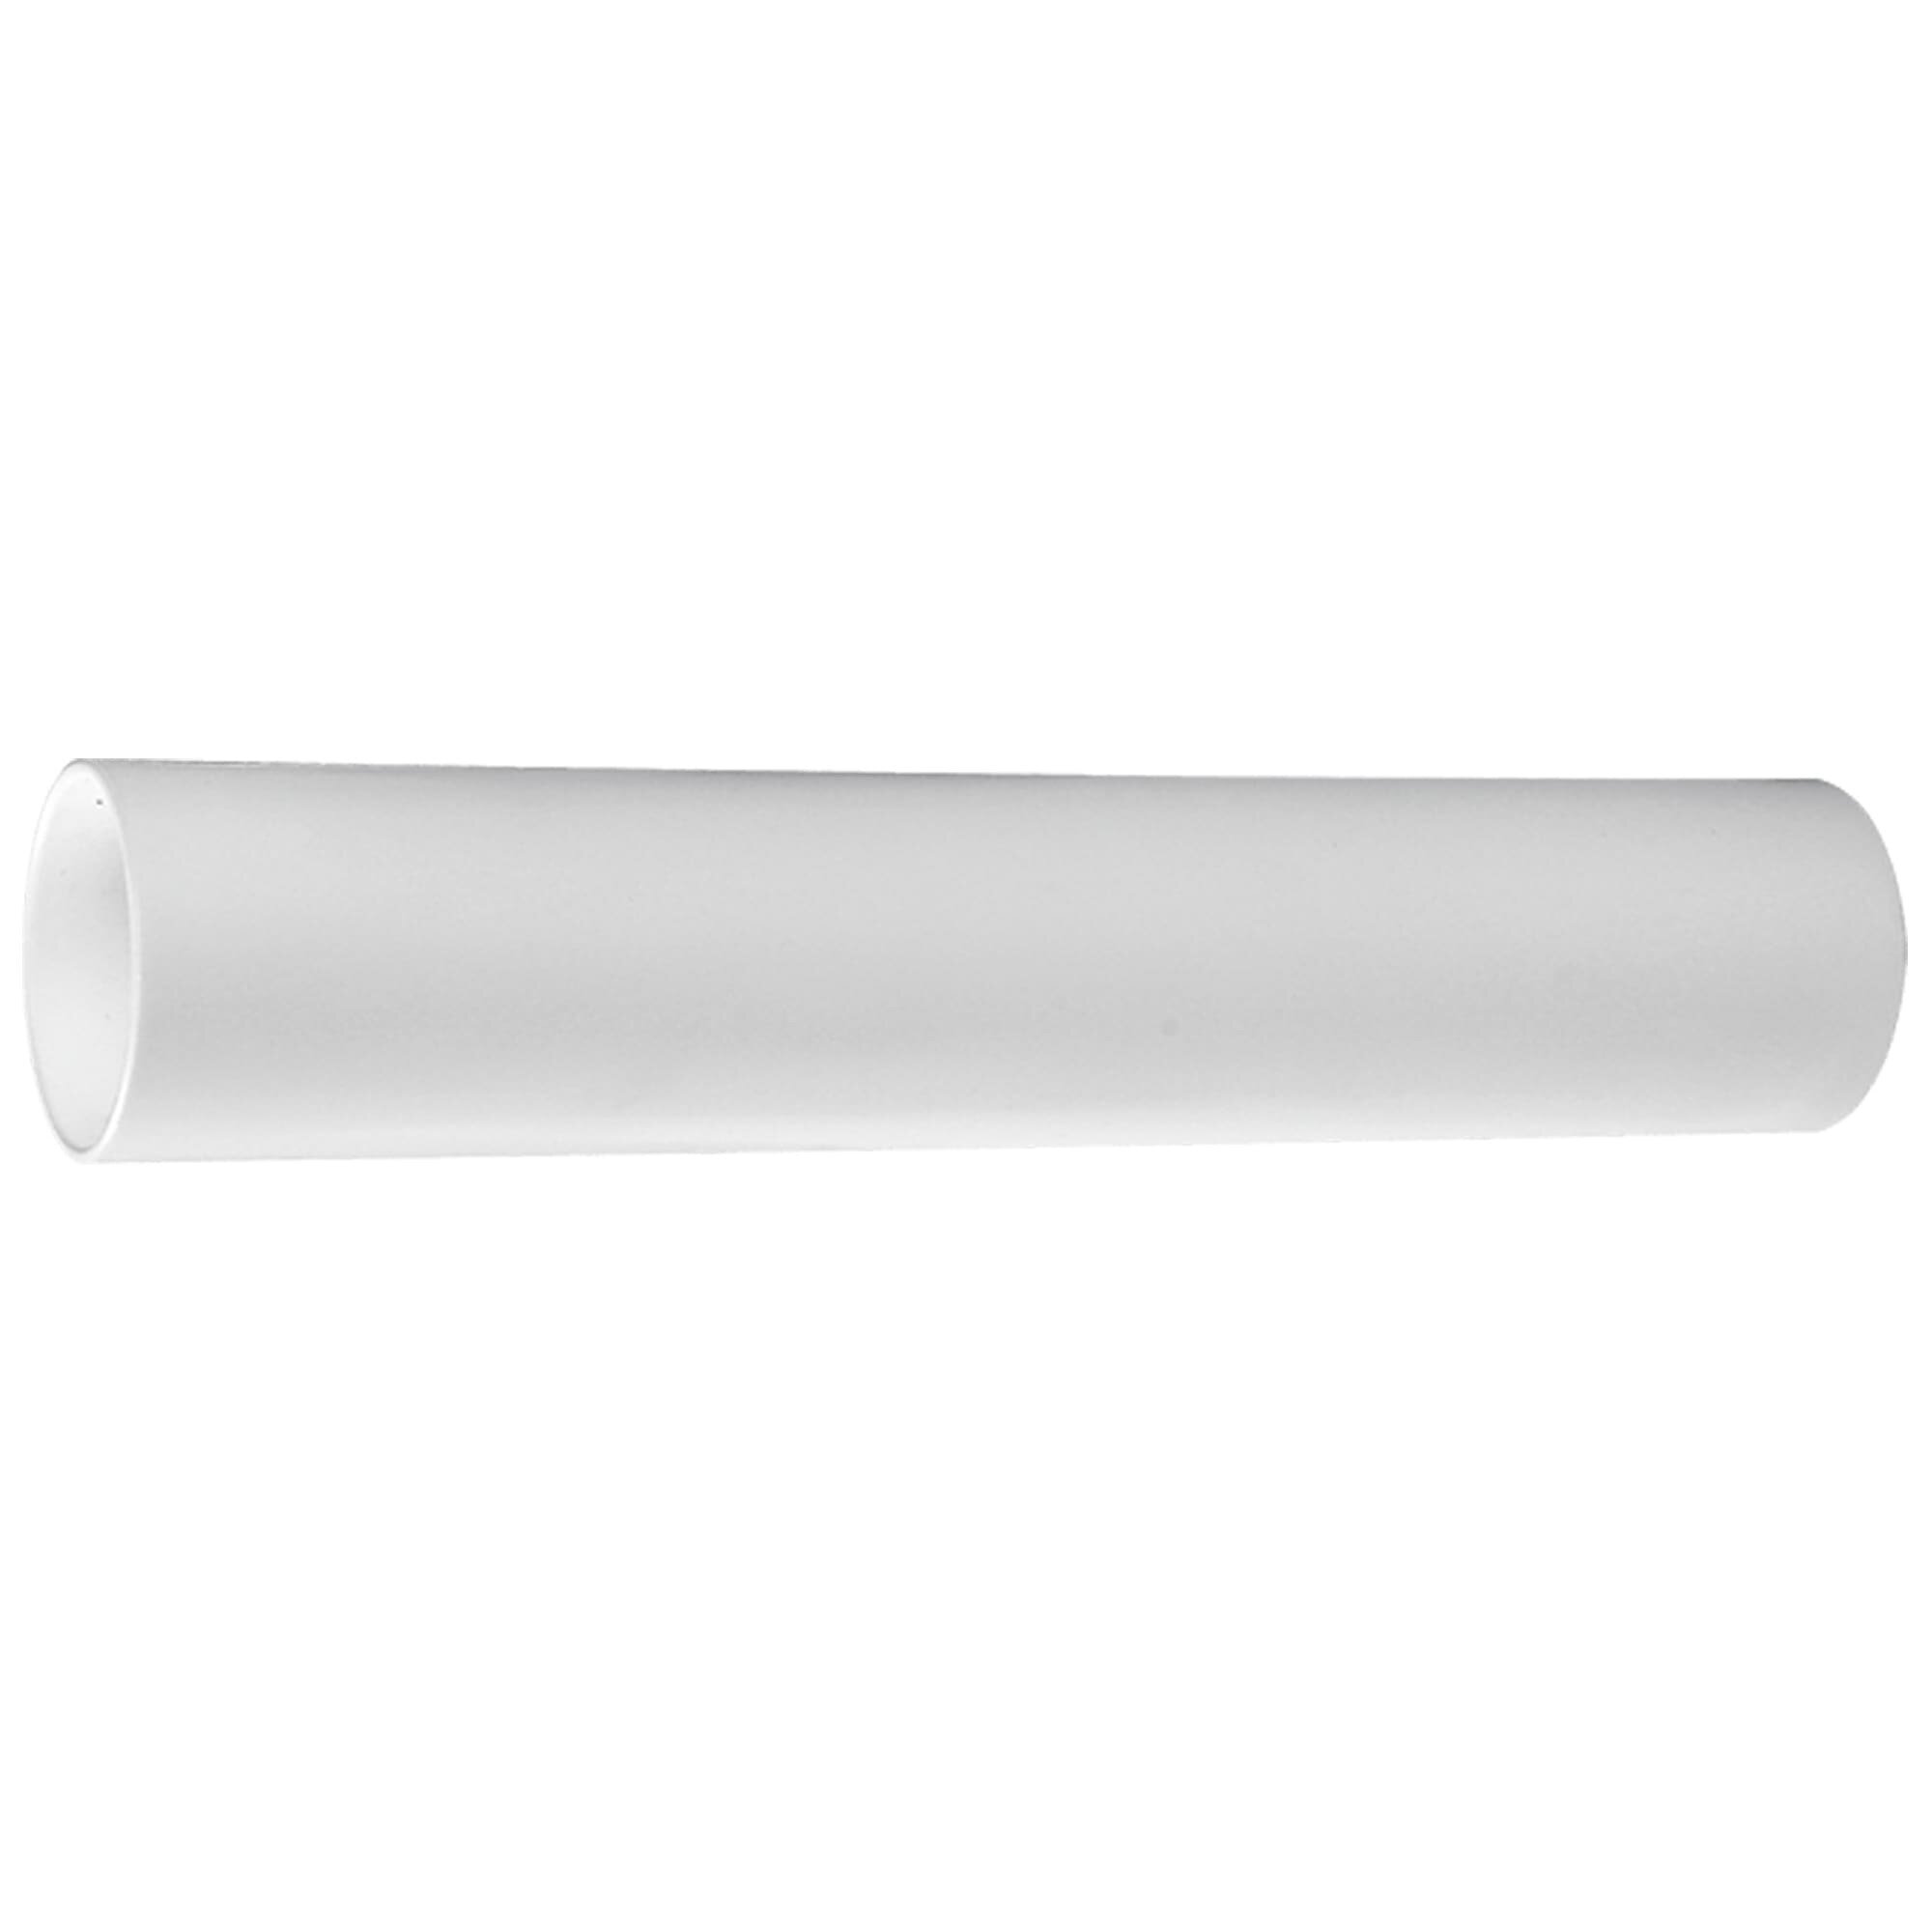 Отвод для сифона Орио В-4277 труба прямая, для сантехники 40-40, цвет белый